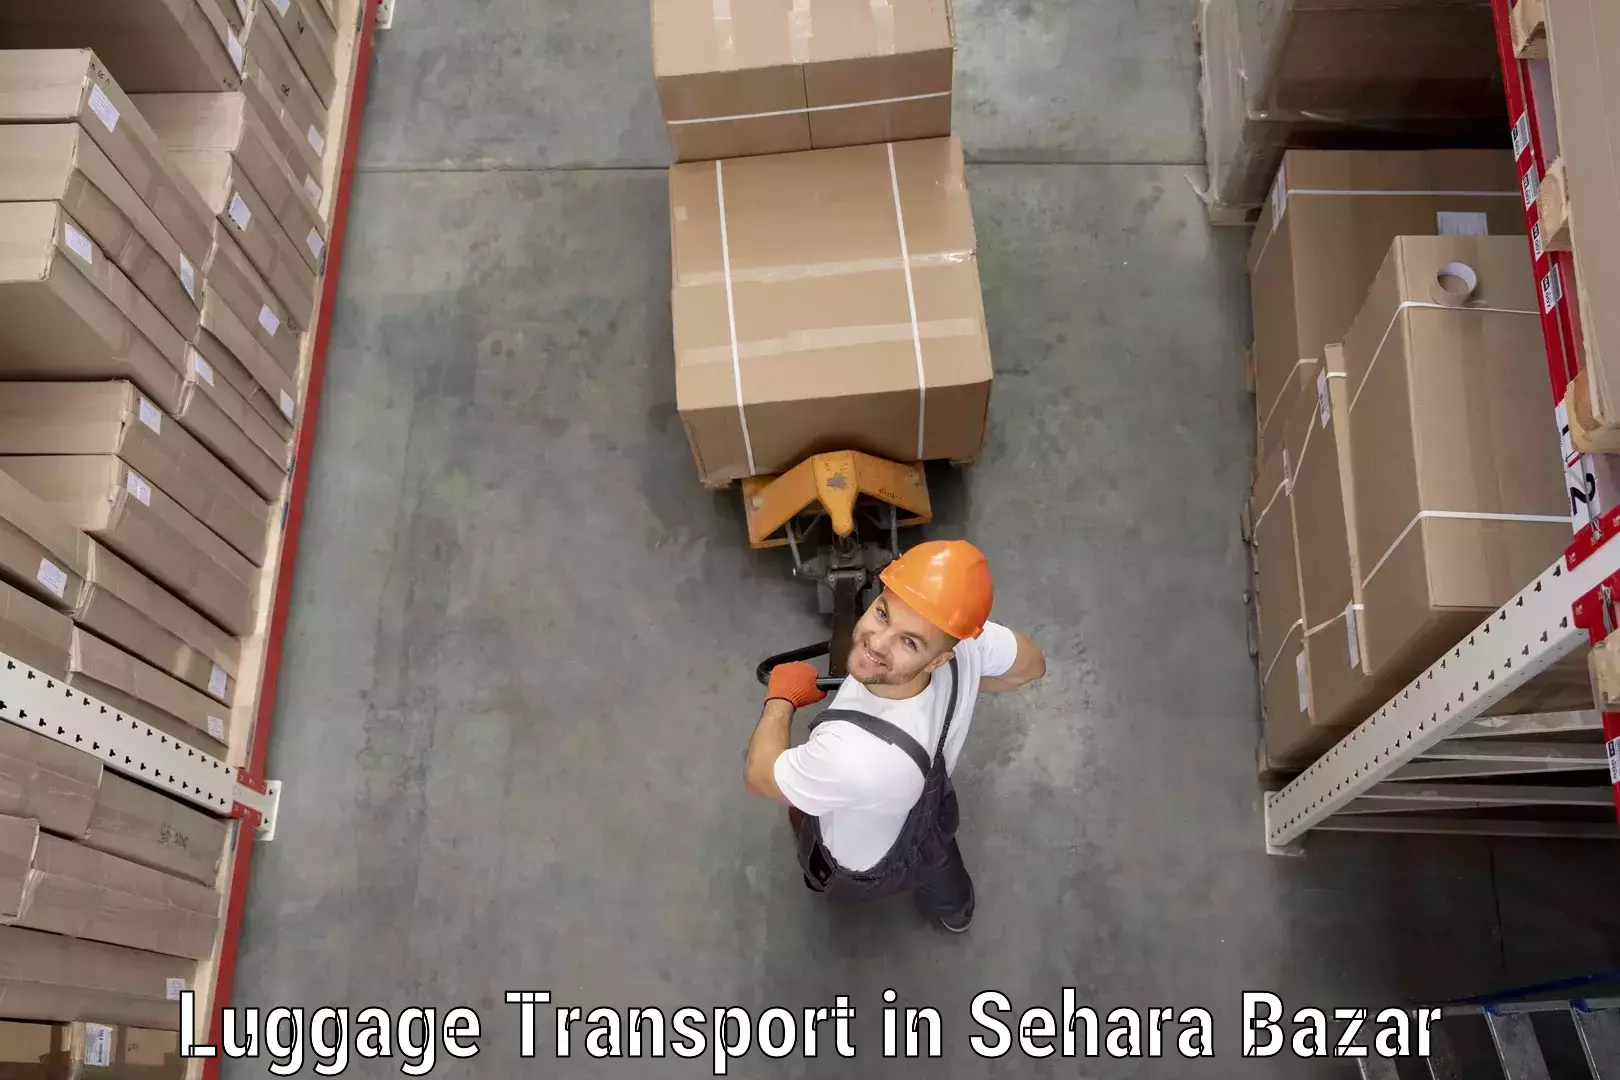 Regional luggage transport in Sehara Bazar